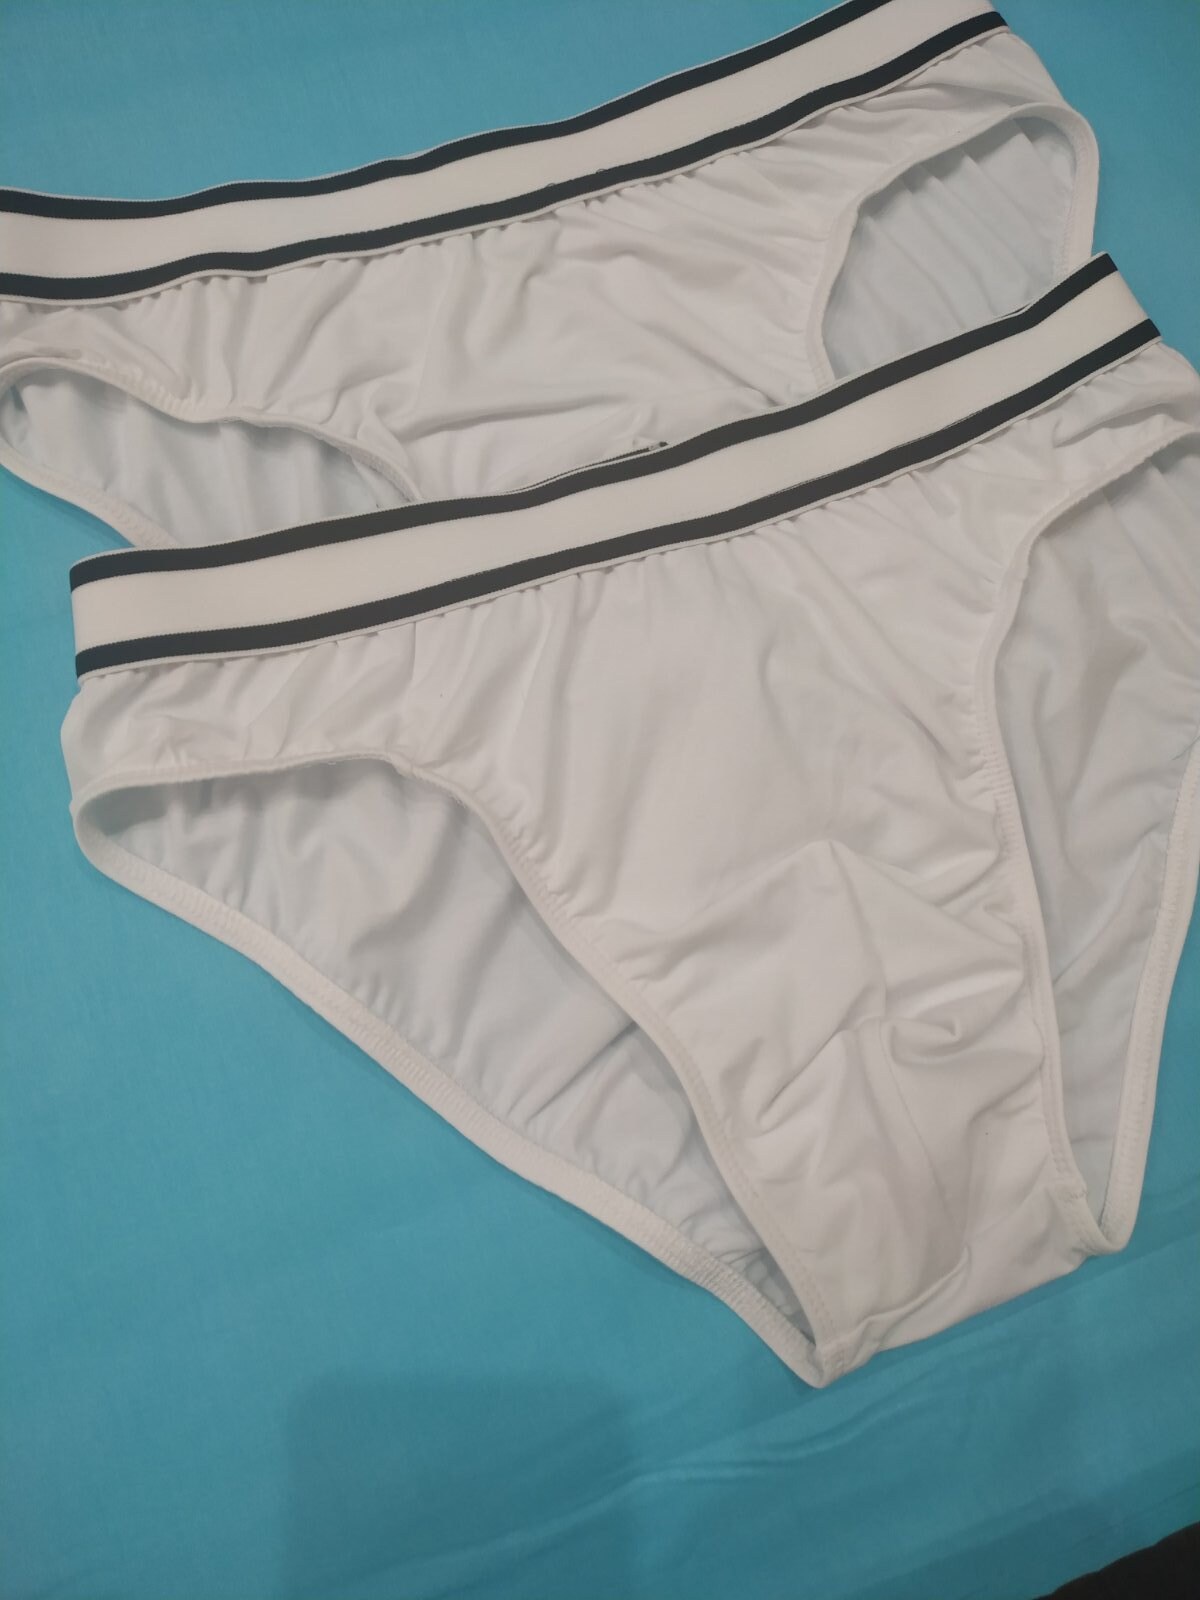 Set of 2 Cotton Stretch Briefs Mens Brief Mens Underwear | Etsy